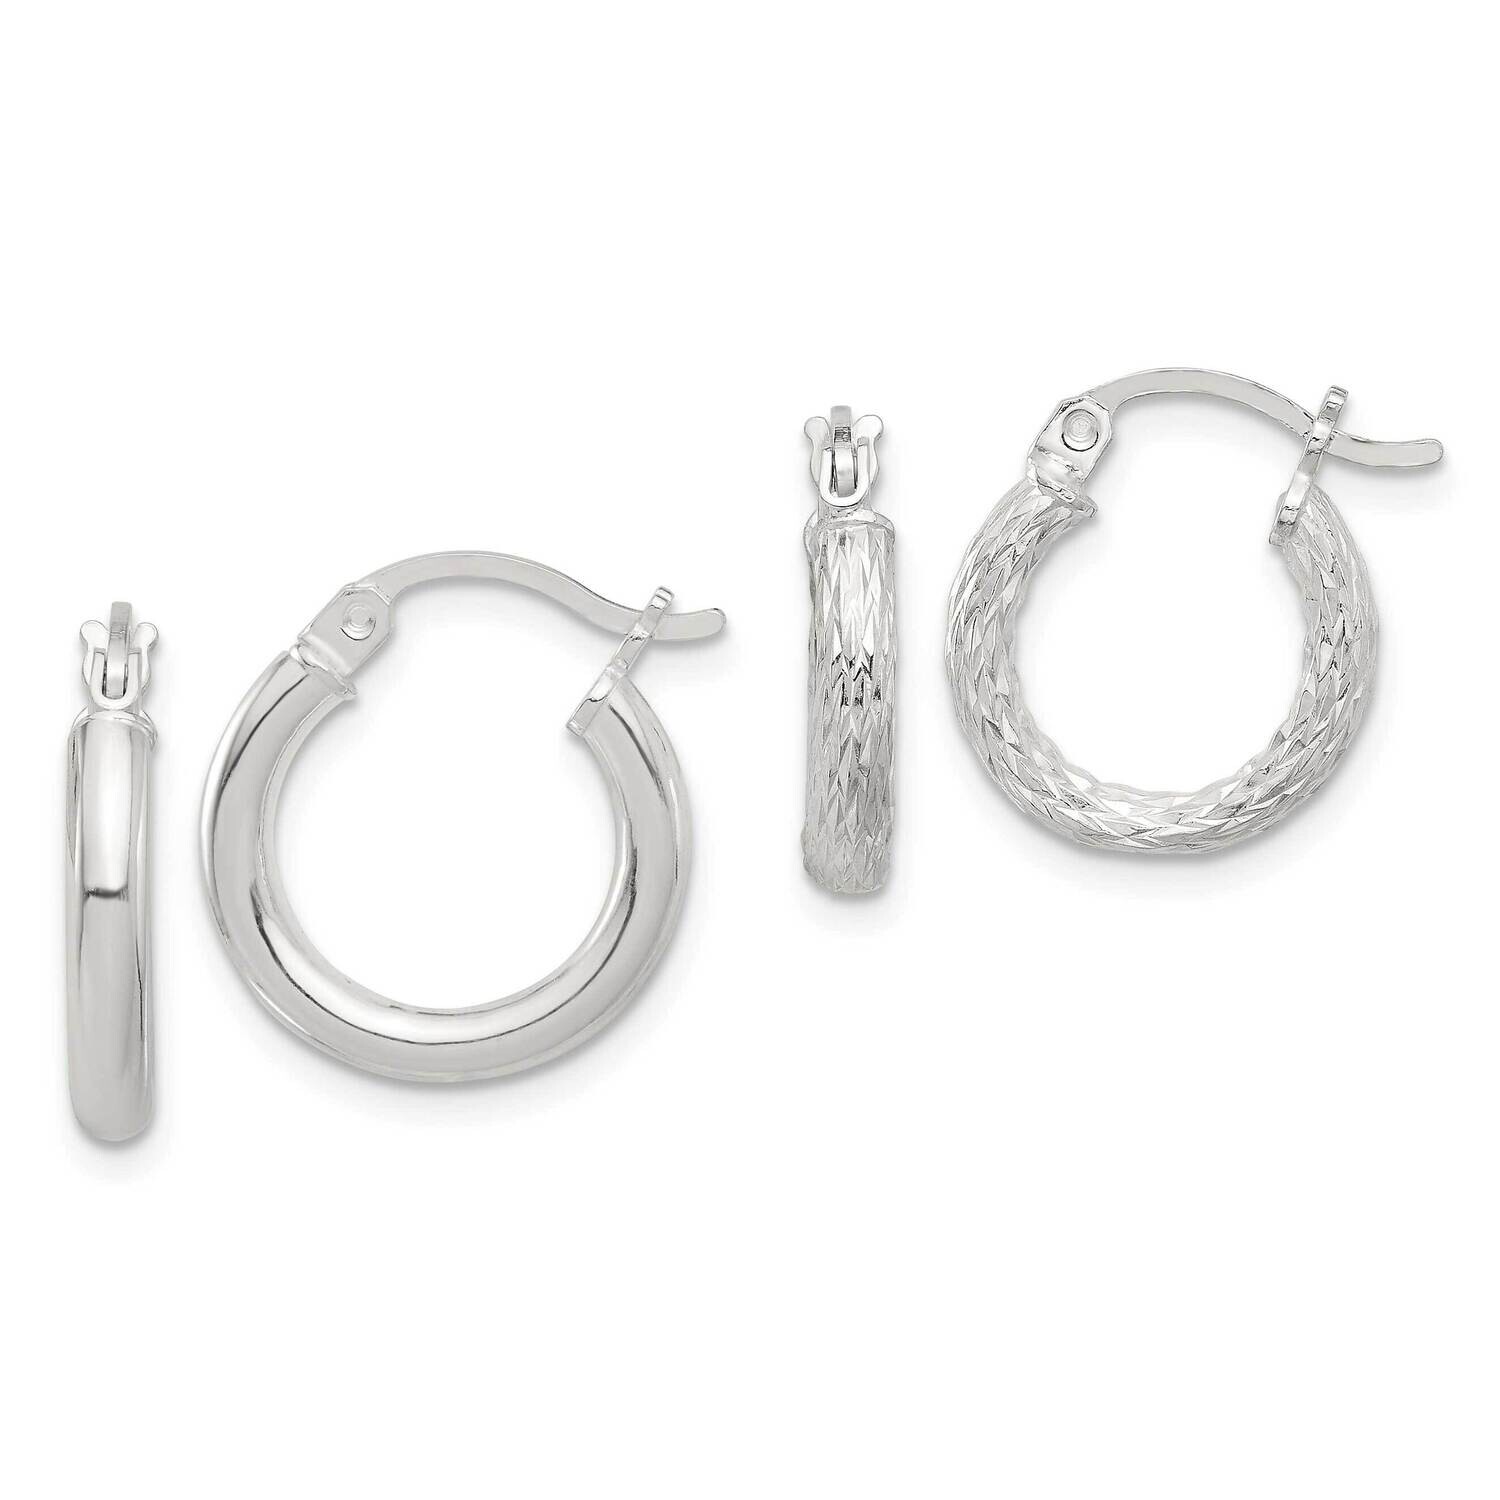 Diamond-Cut 2 Pair Set Hoop Earrings Sterling Silver Polished QE16855SET